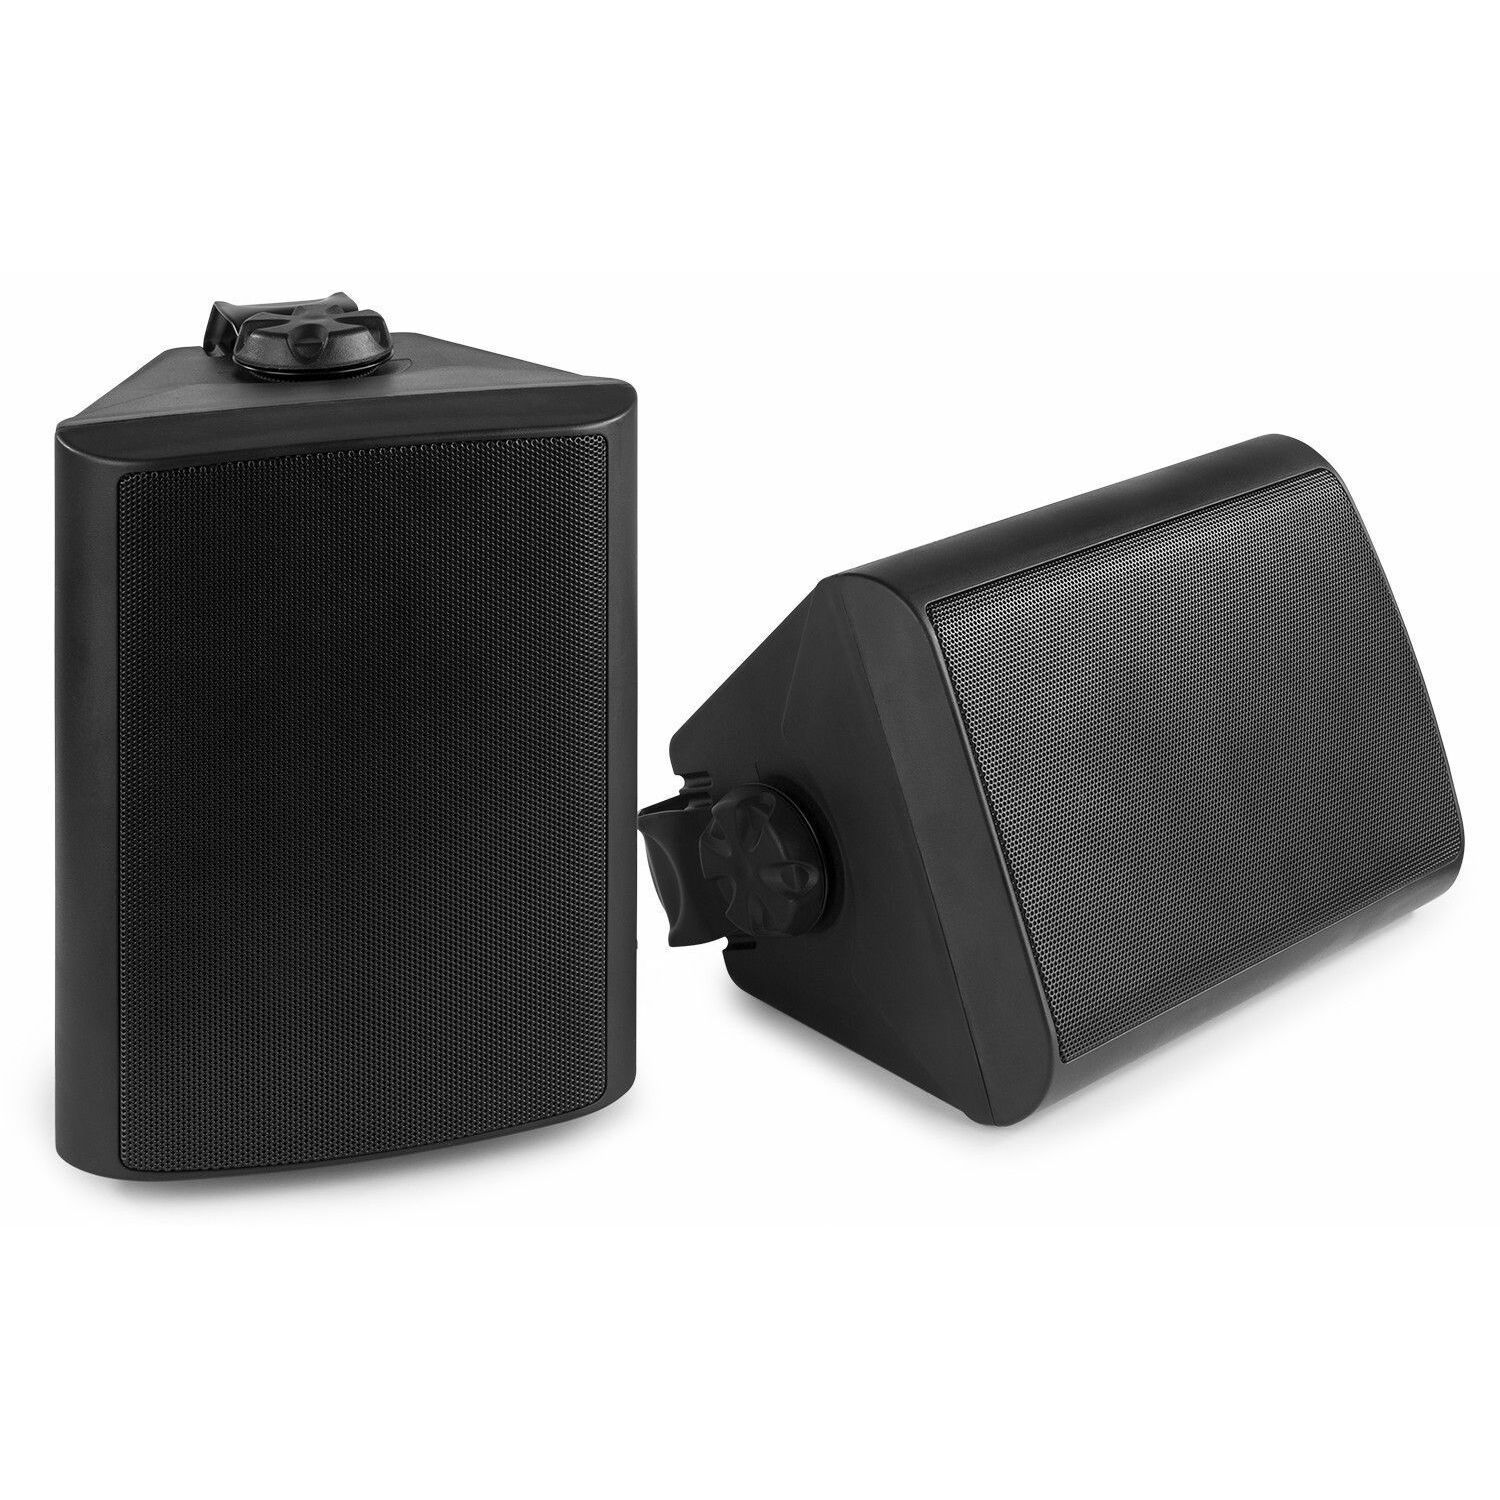 Retourdeal - Power Dynamics BGO65 Zwarte speakerset voor binnen en